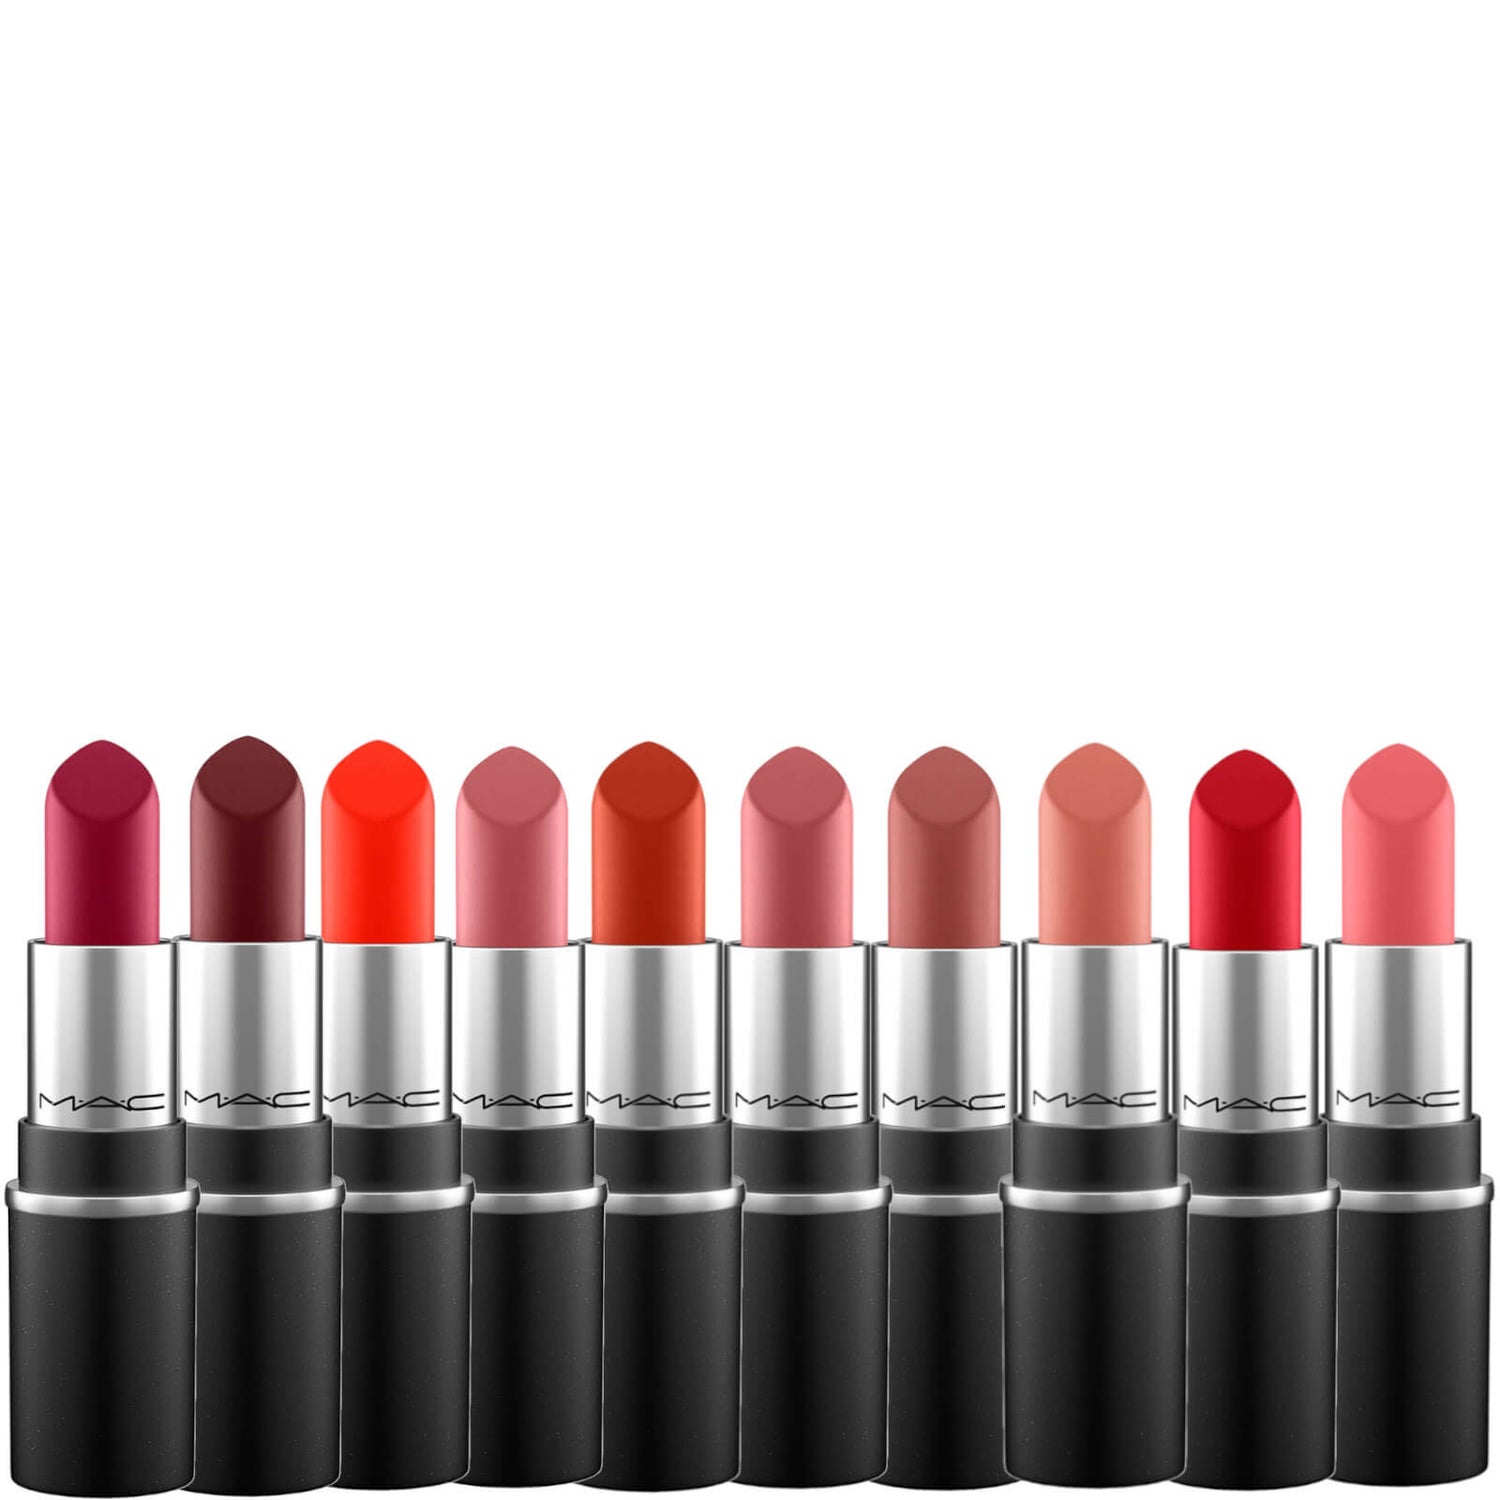 Mini Bestsellers Lipstick Wardrobe Bundle de MAC